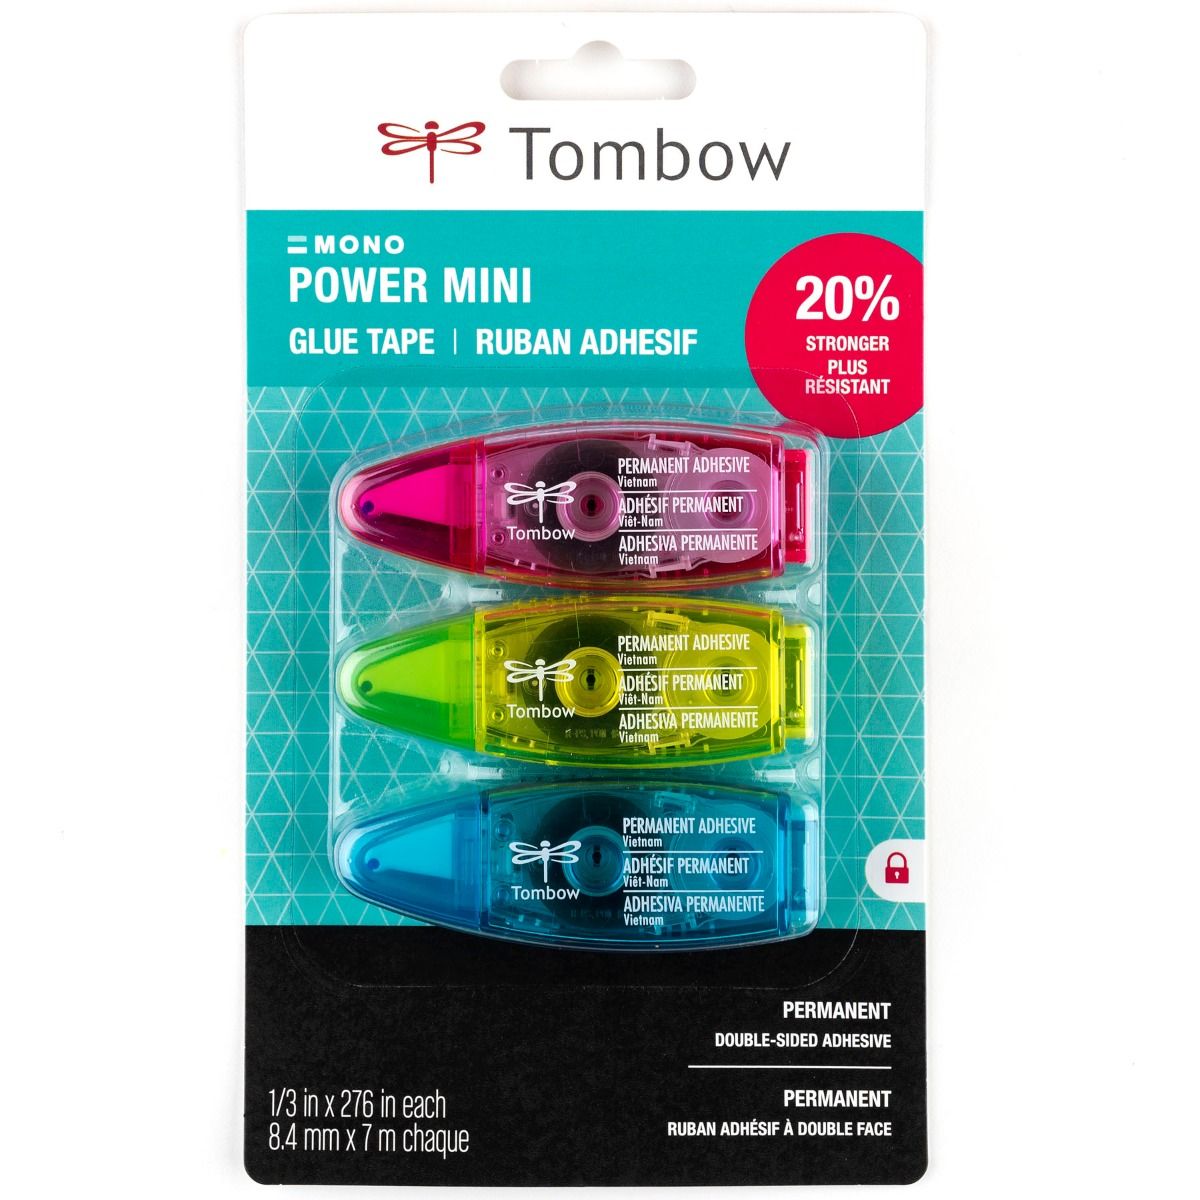 Tombow Power Mini Glue Tape - Permanent Bond